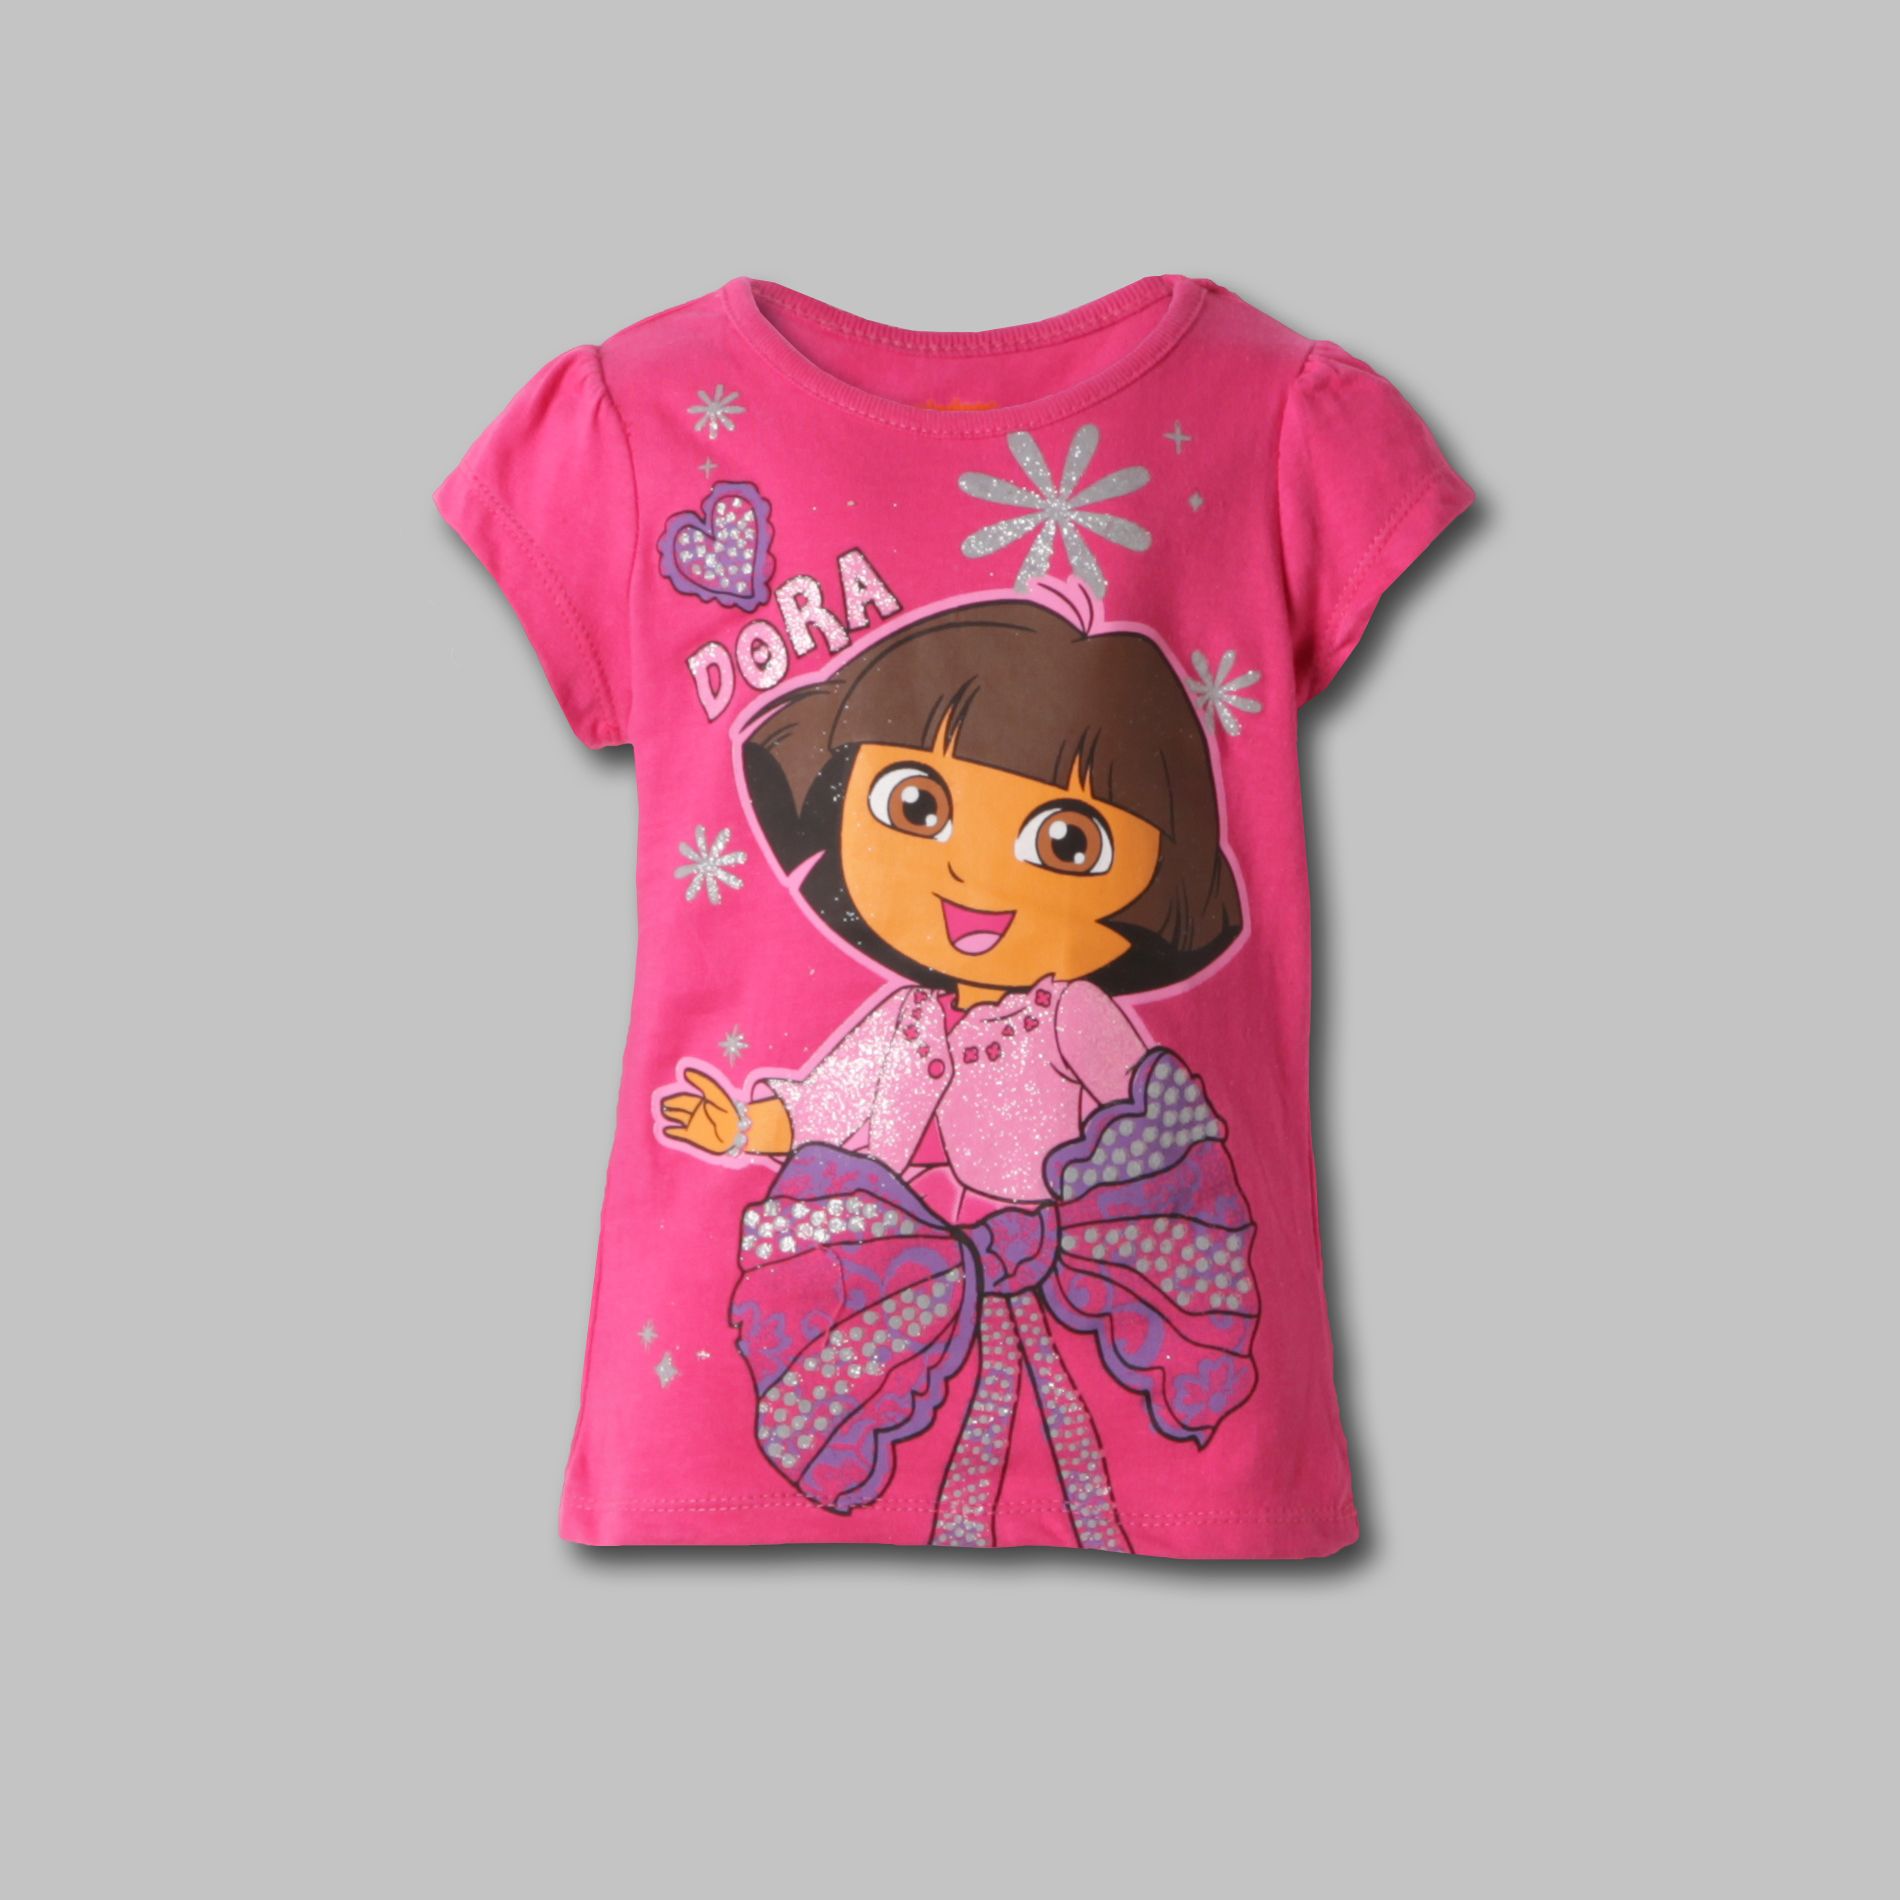 Nickelodeon Girl&#8217;s Graphic Tee Dora the Explorer Short Sleeve